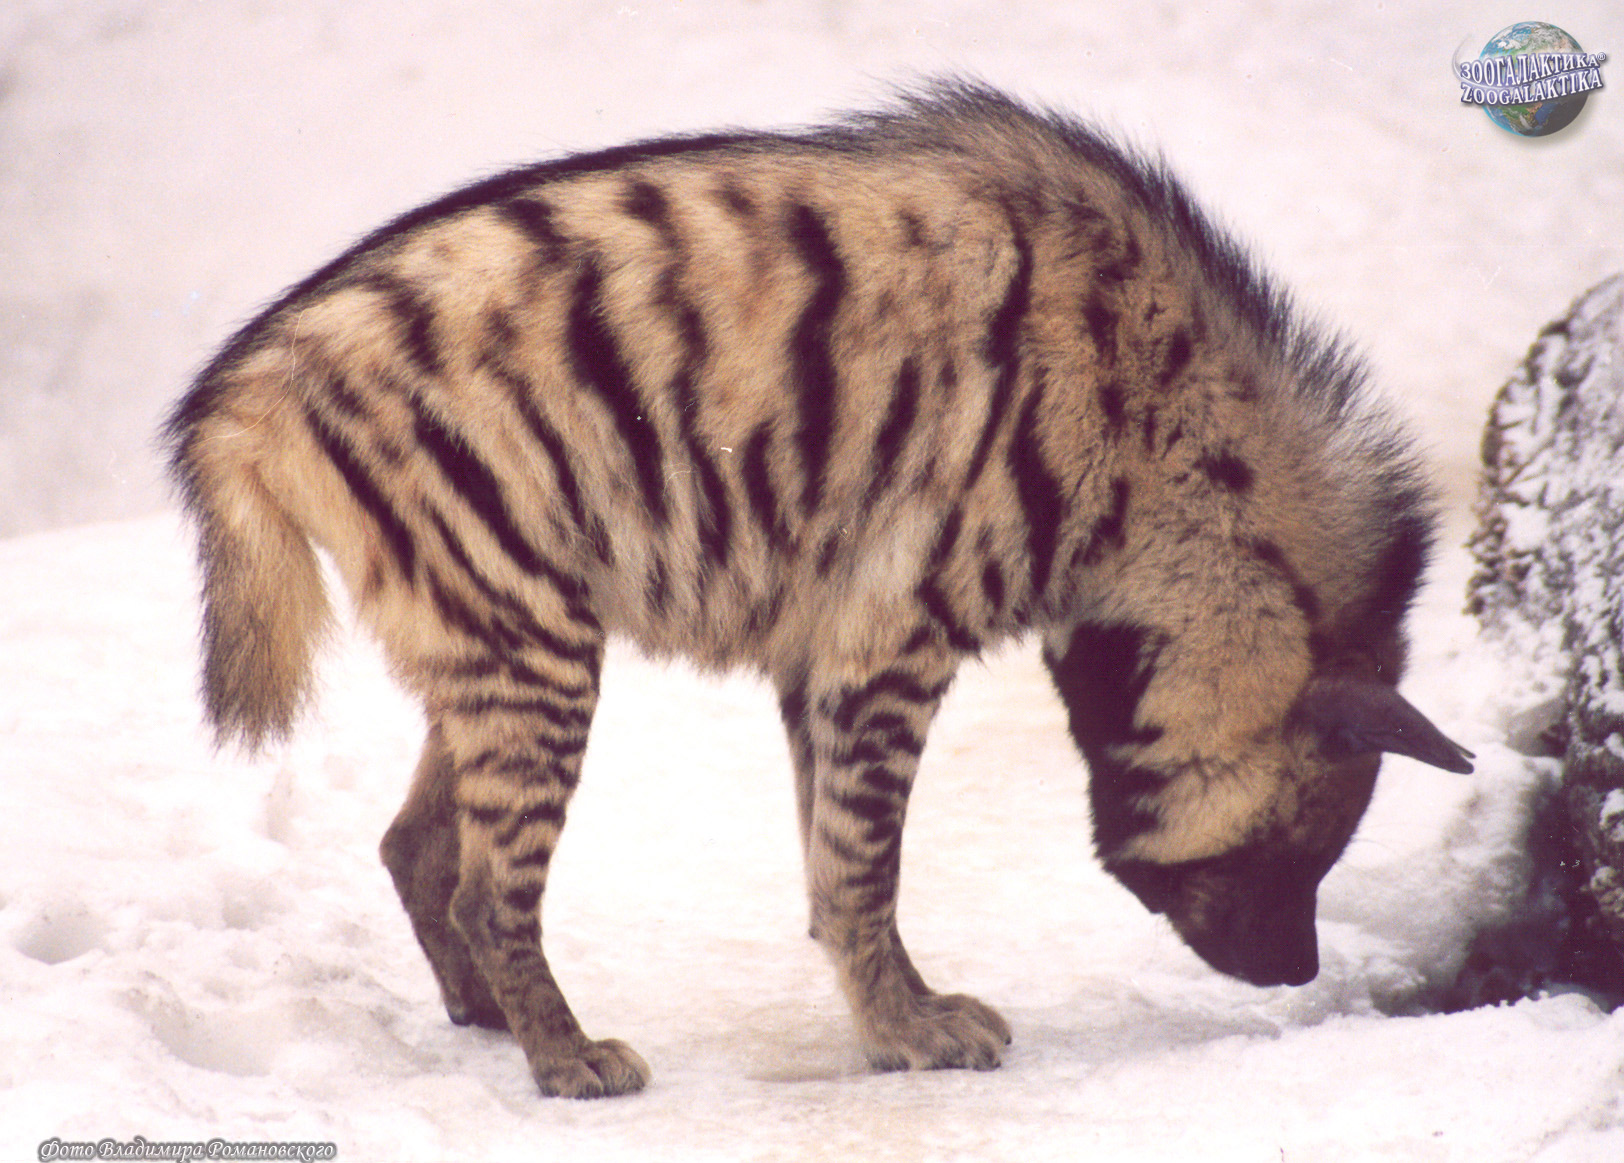 http://zoogalaktika.ru/assets/images/mammalia/carnivora/hyaenidae/hyaena-hyaena/hyaena-hyaena_03.jpg